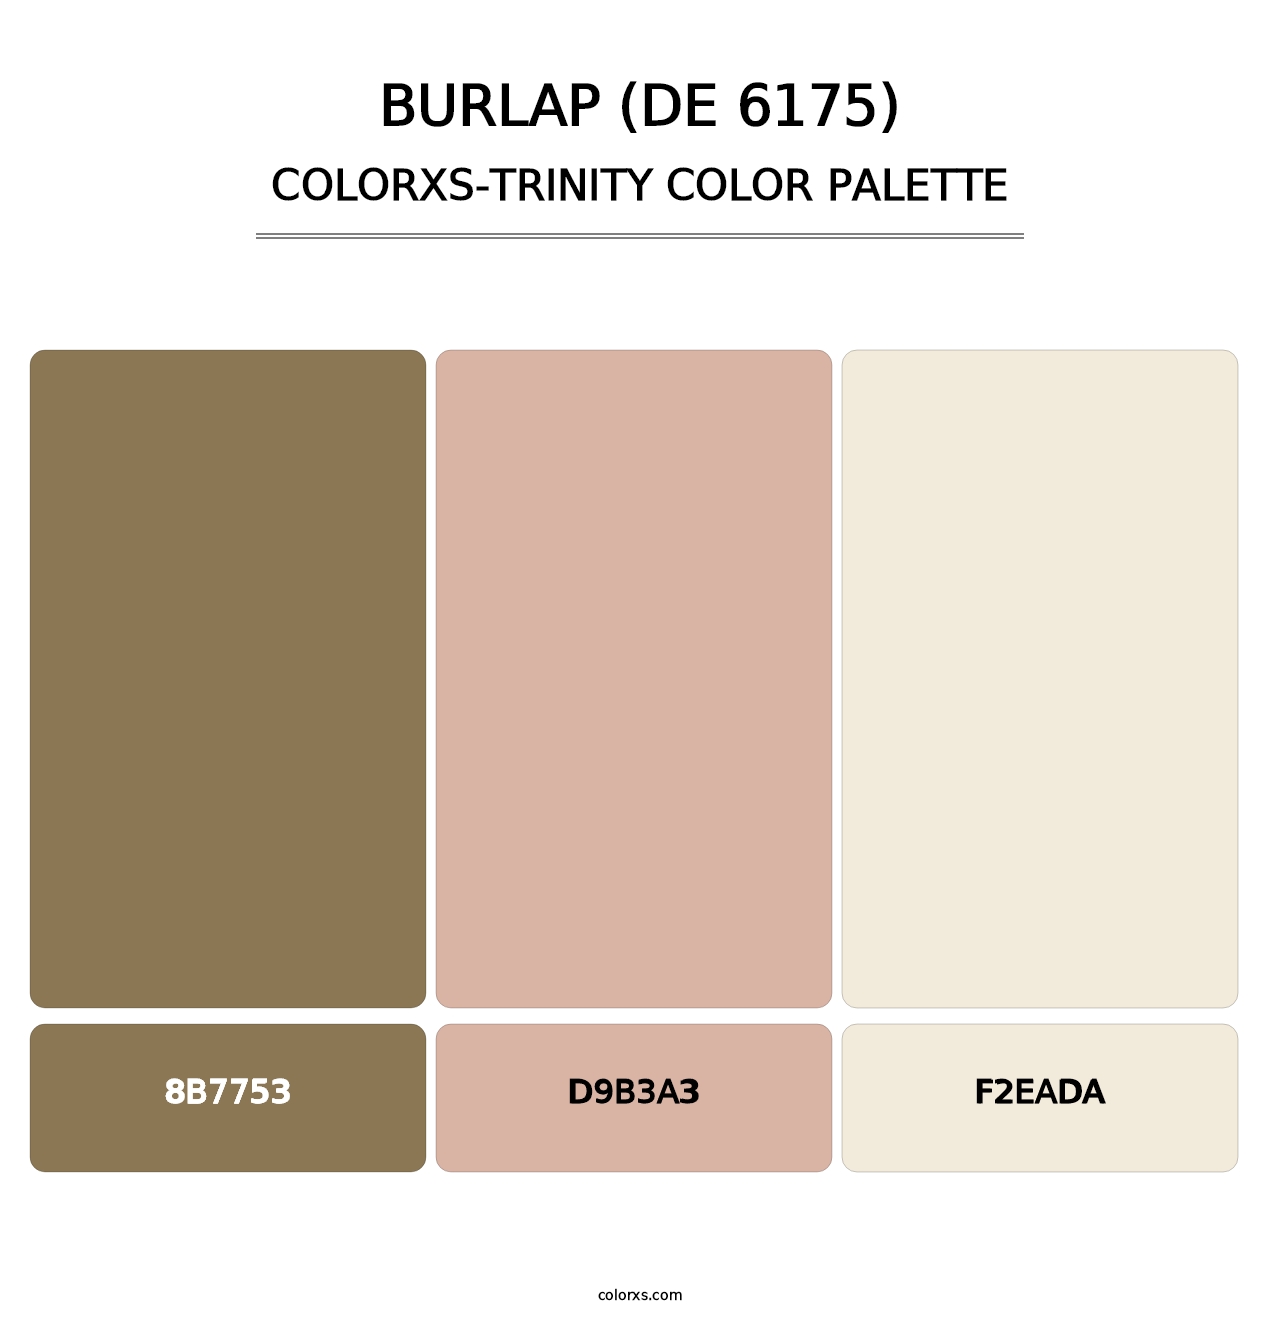 Burlap (DE 6175) - Colorxs Trinity Palette